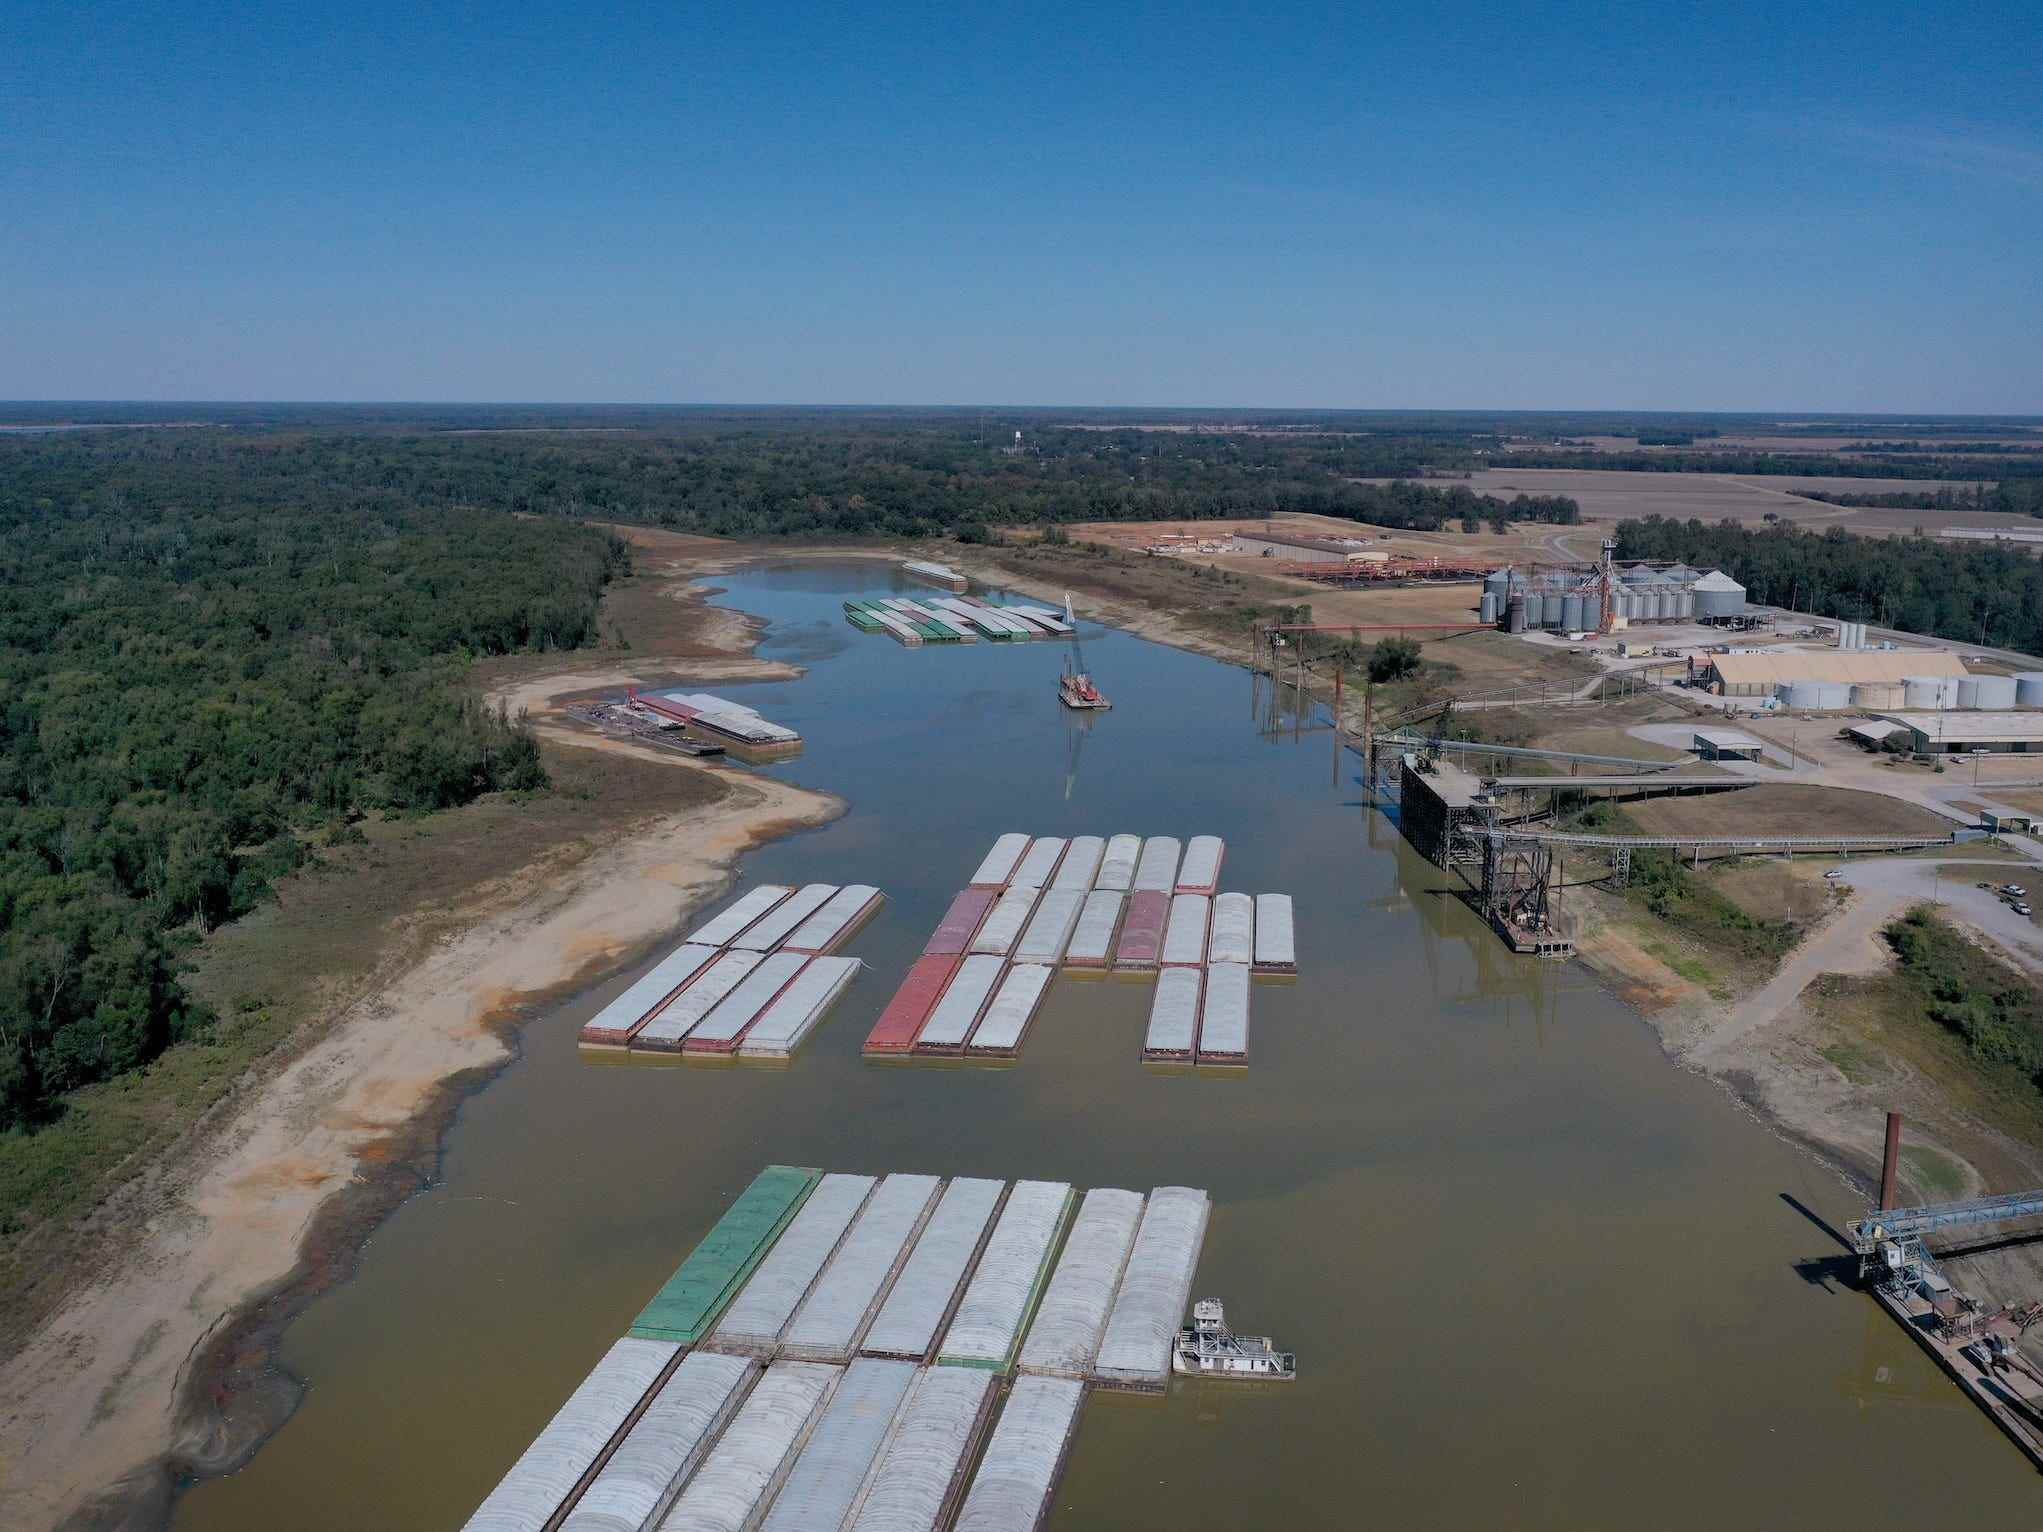 Lastkähne sitzen in niedrigen Mississippi-Gewässern, Luftbild